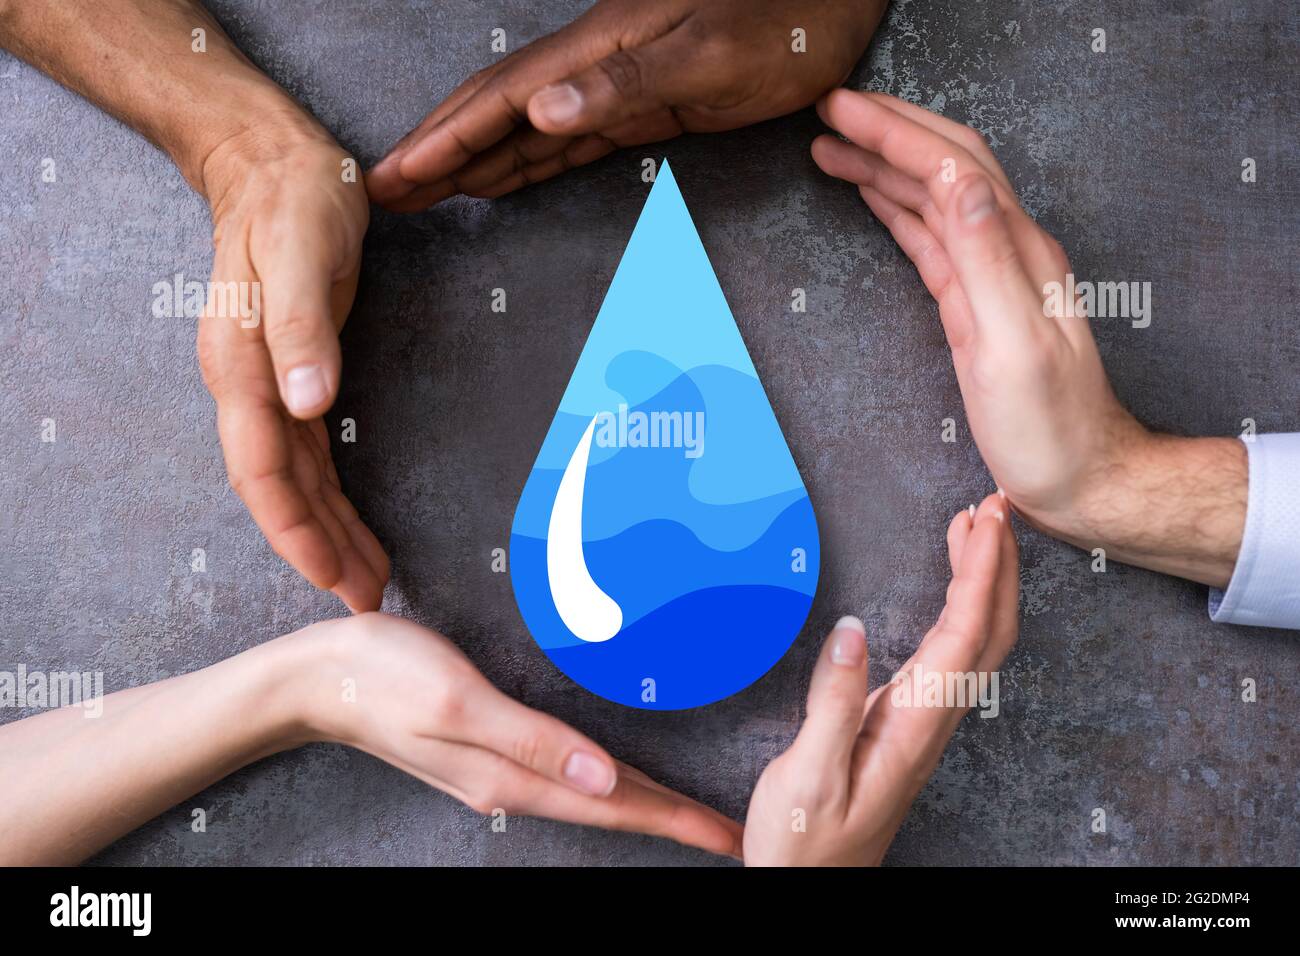 Économisez de l'eau douce. Environnement conservation de l'énergie et durabilité Banque D'Images